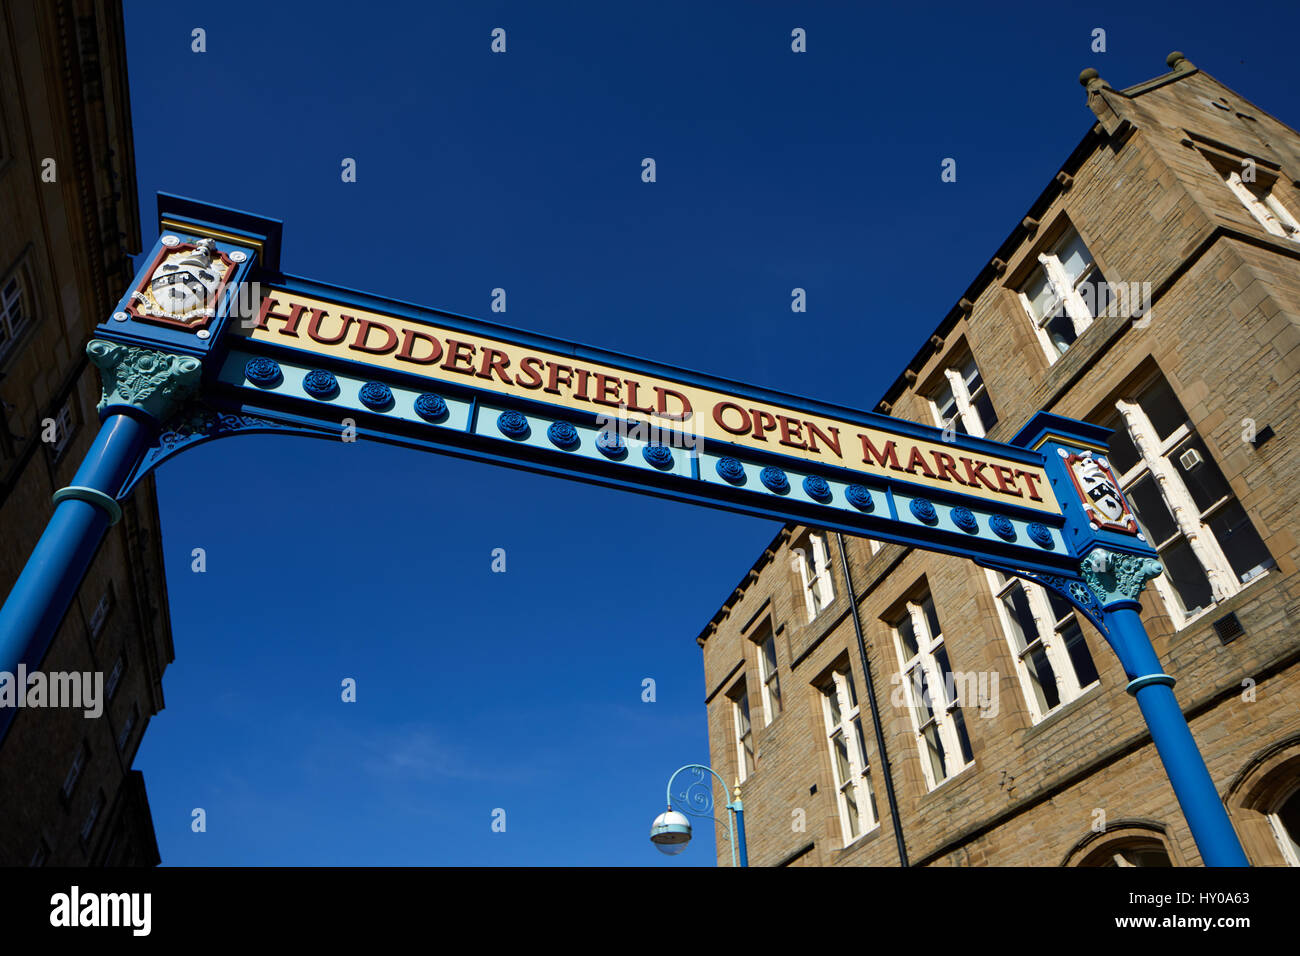 Marché Ouvert de l'époque victorienne, Byram St, Huddersfield town centre-ville un grand marché de Kirklees Metropolitan Borough, West Yorkshire, Angleterre. UK. Banque D'Images